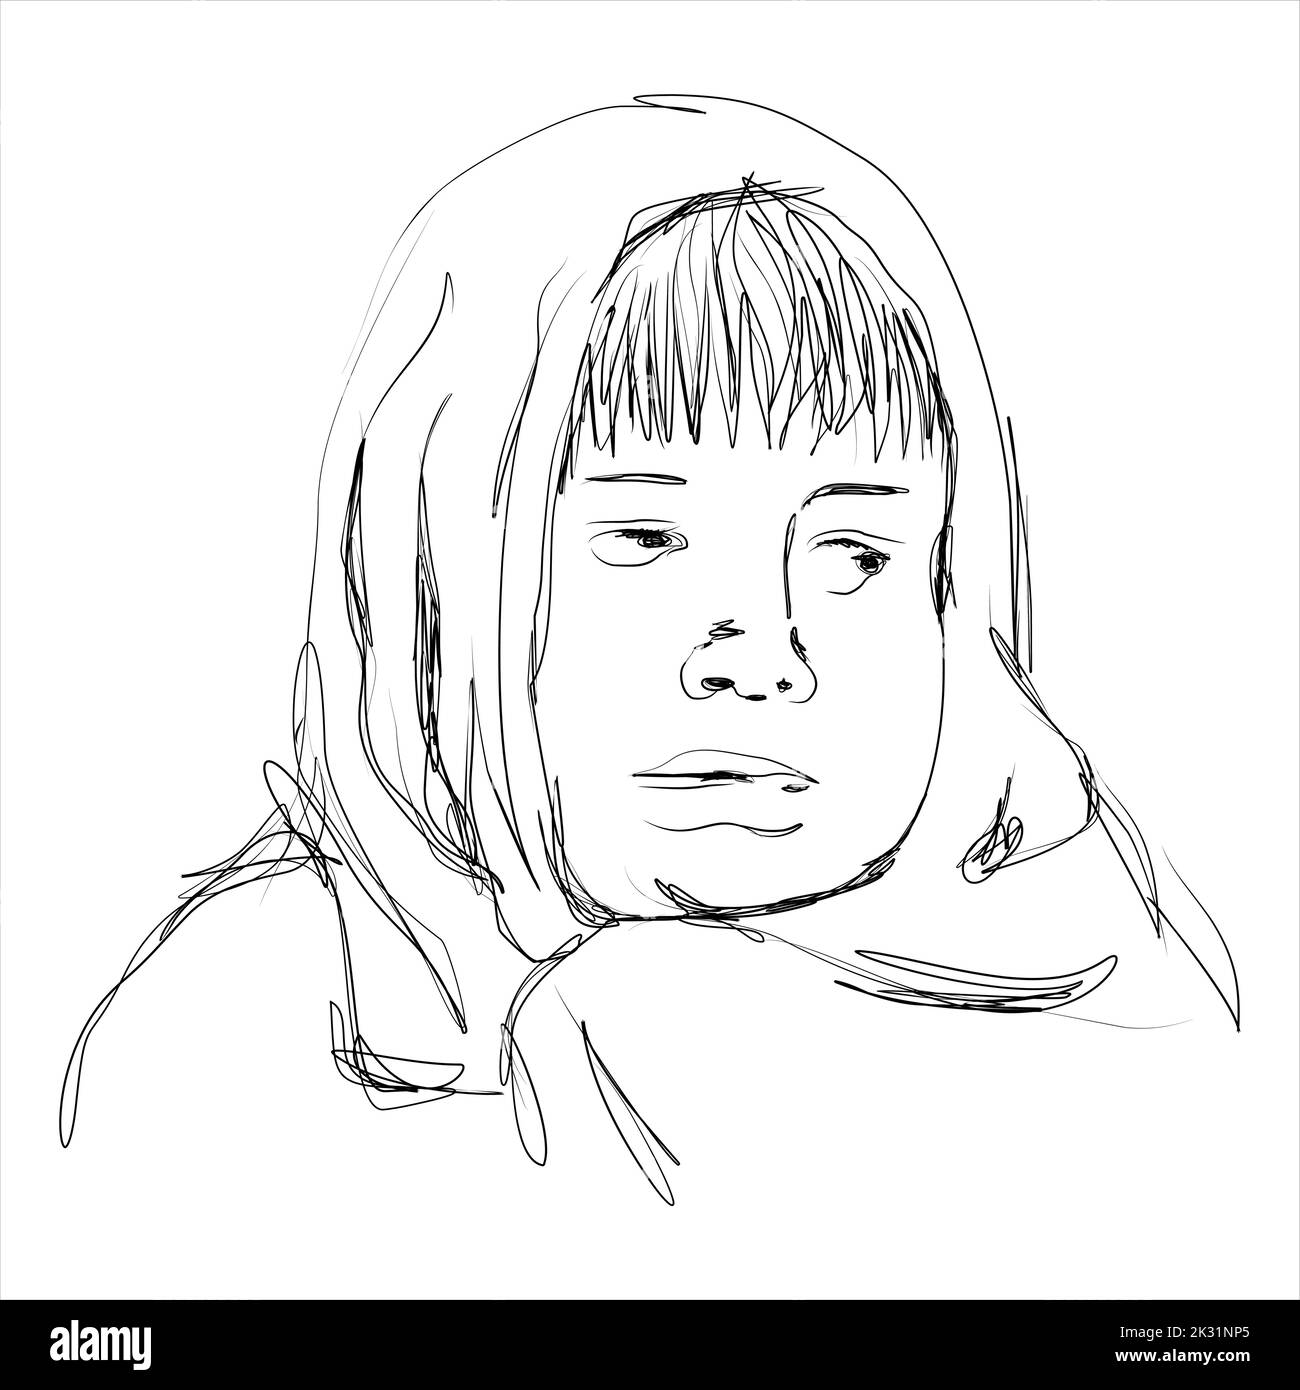 Handgezeichnete Illustration einer kalten Person. Perfekt für Designelemente, Grafiken und Wanddekorationen Stock Vektor